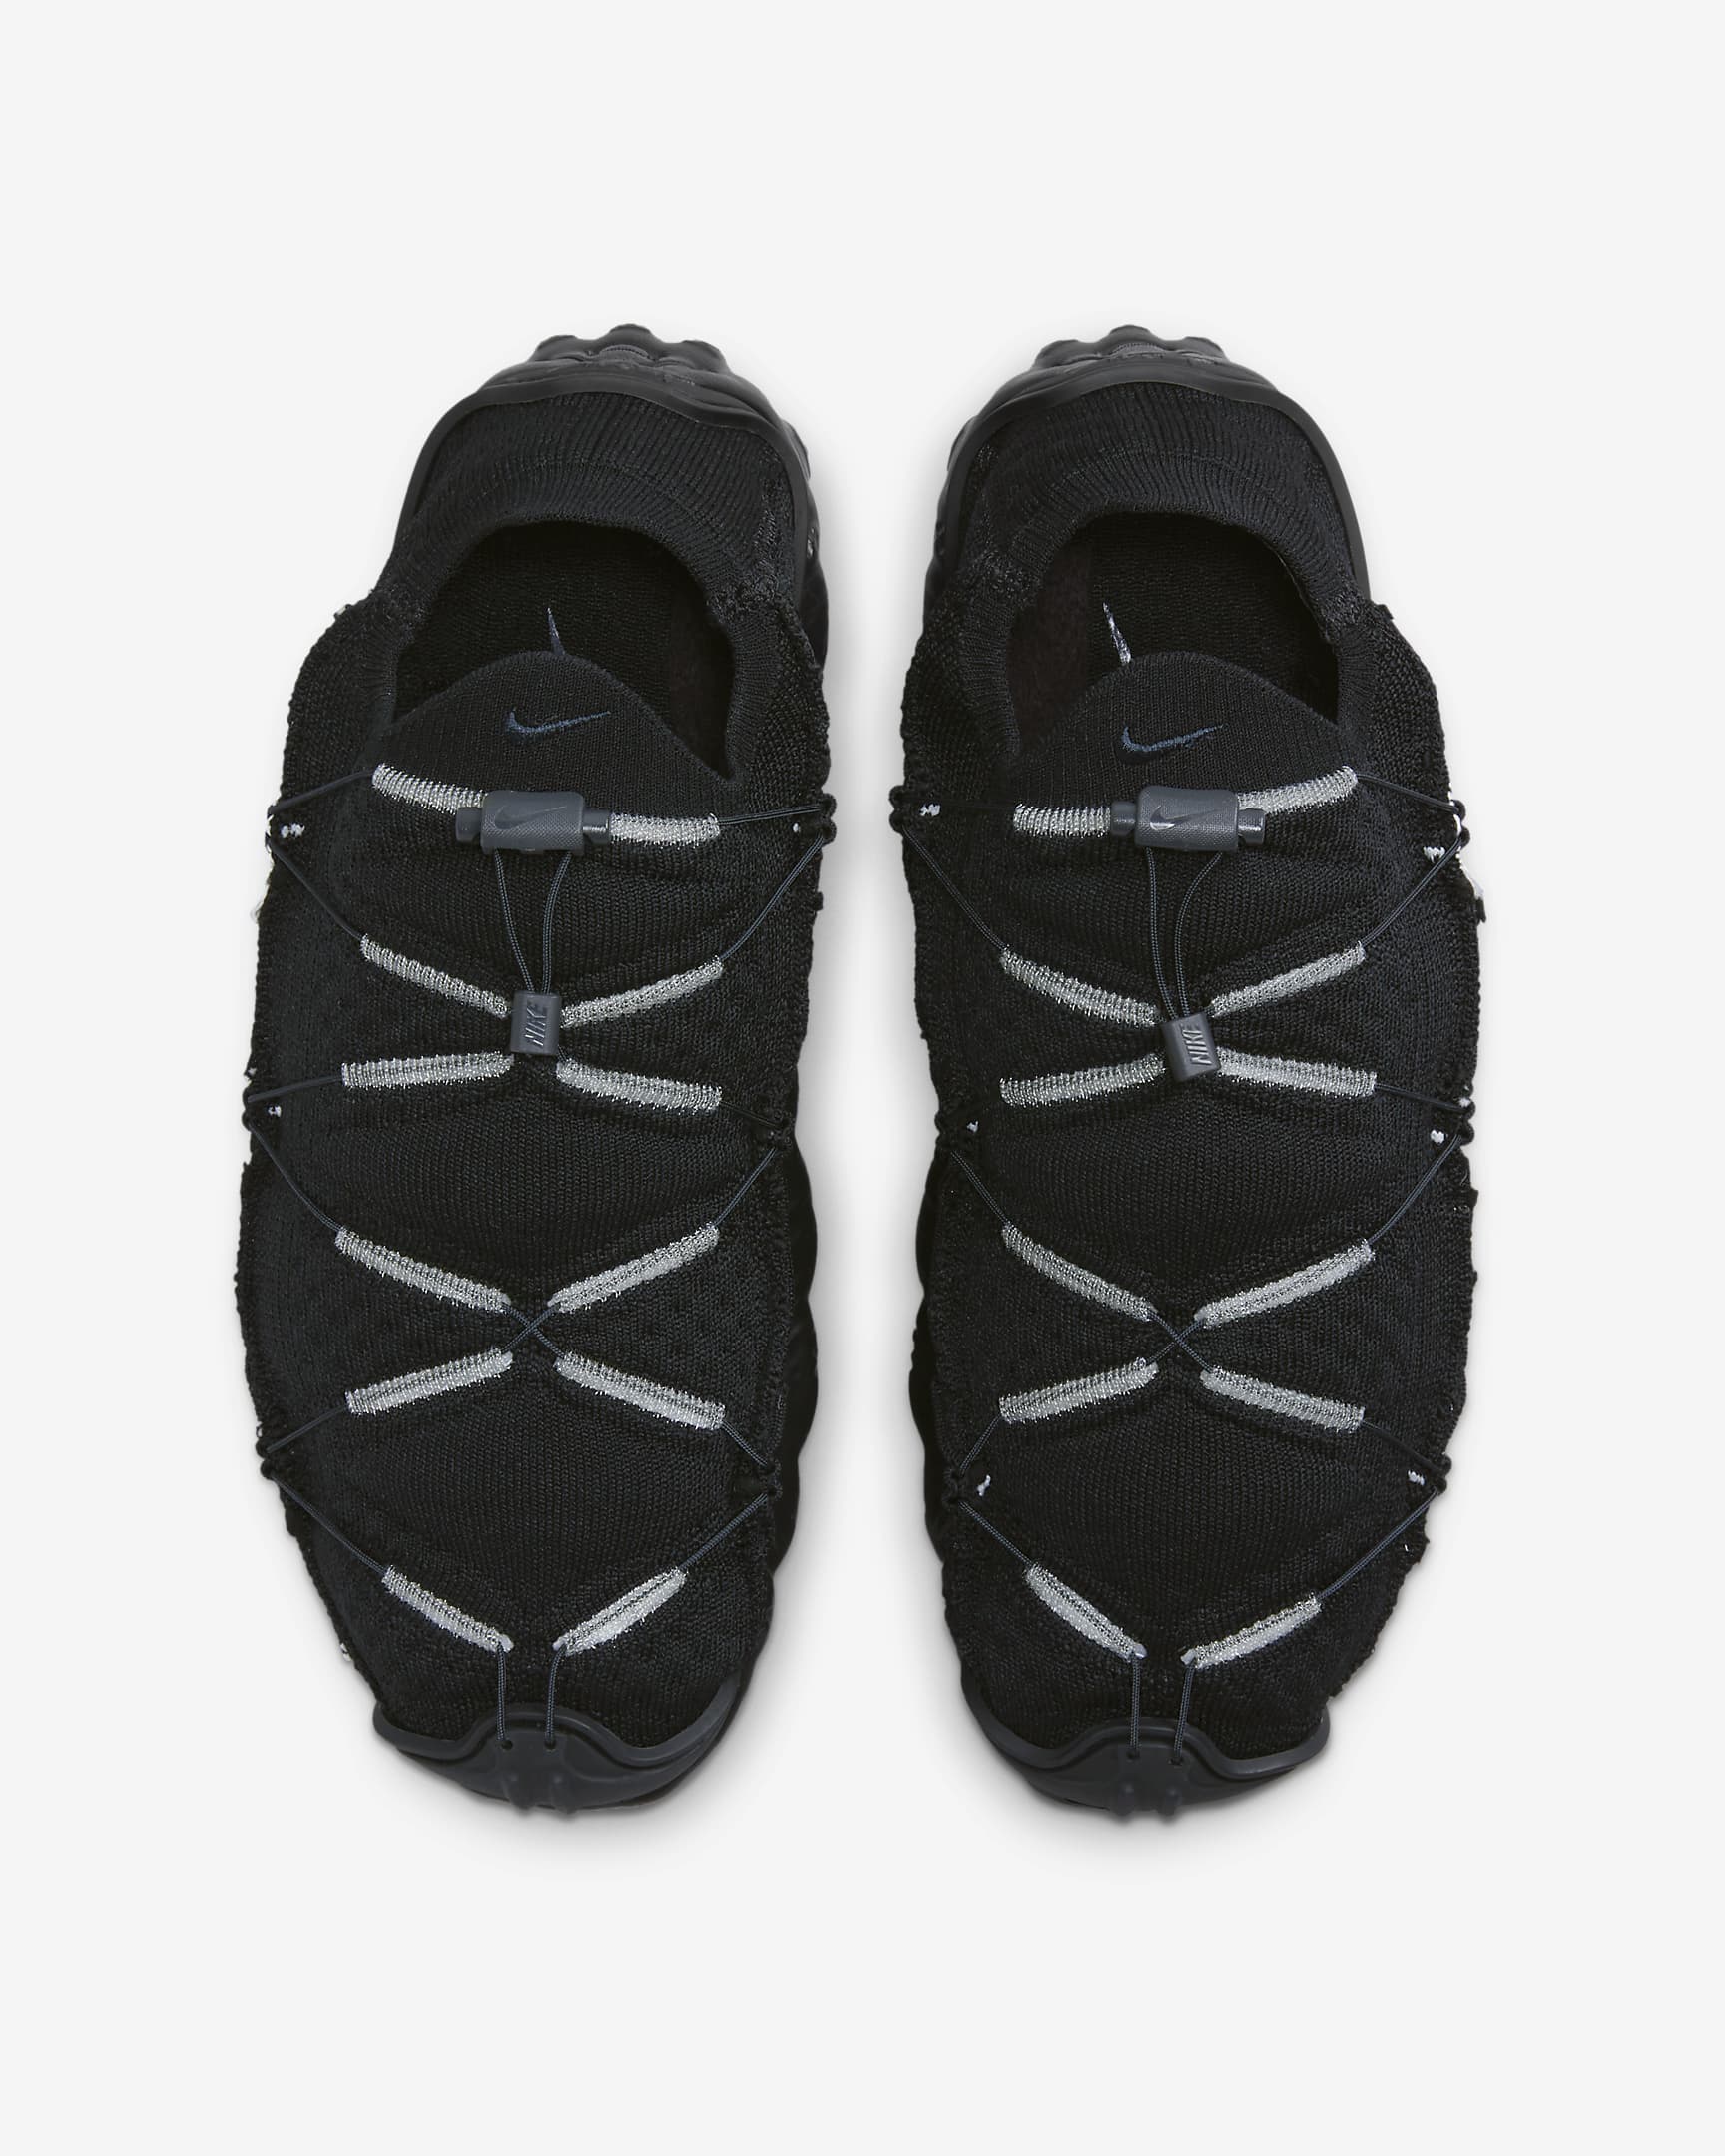 Nike ISPA MindBody Men's Shoes - Black/Sail/Anthracite